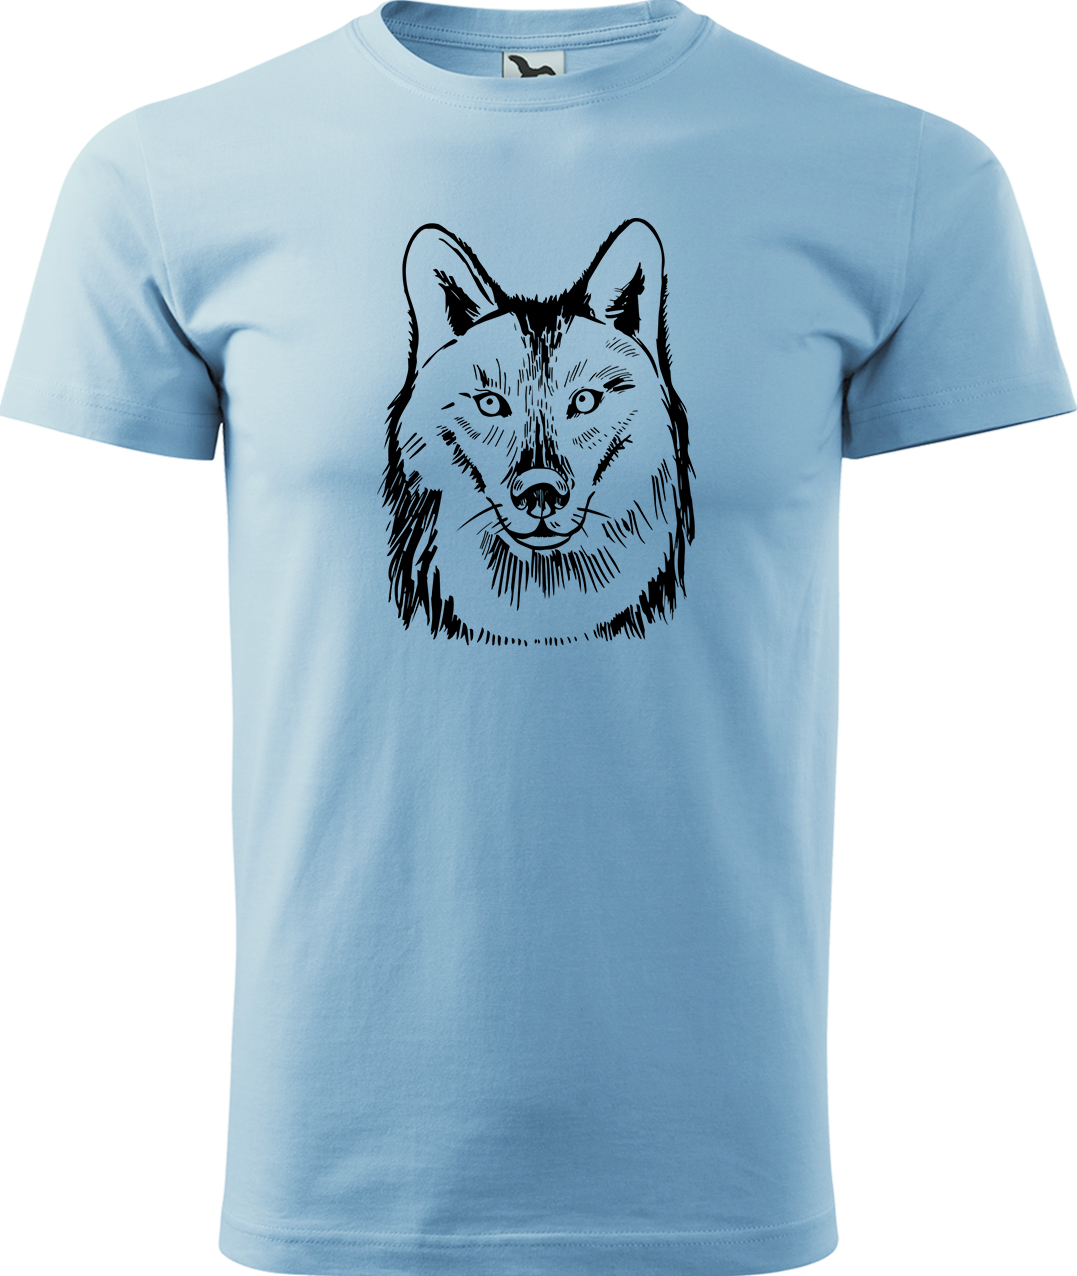 Pánské tričko s vlkem - Kresba vlka Velikost: L, Barva: Nebesky modrá (15), Střih: pánský